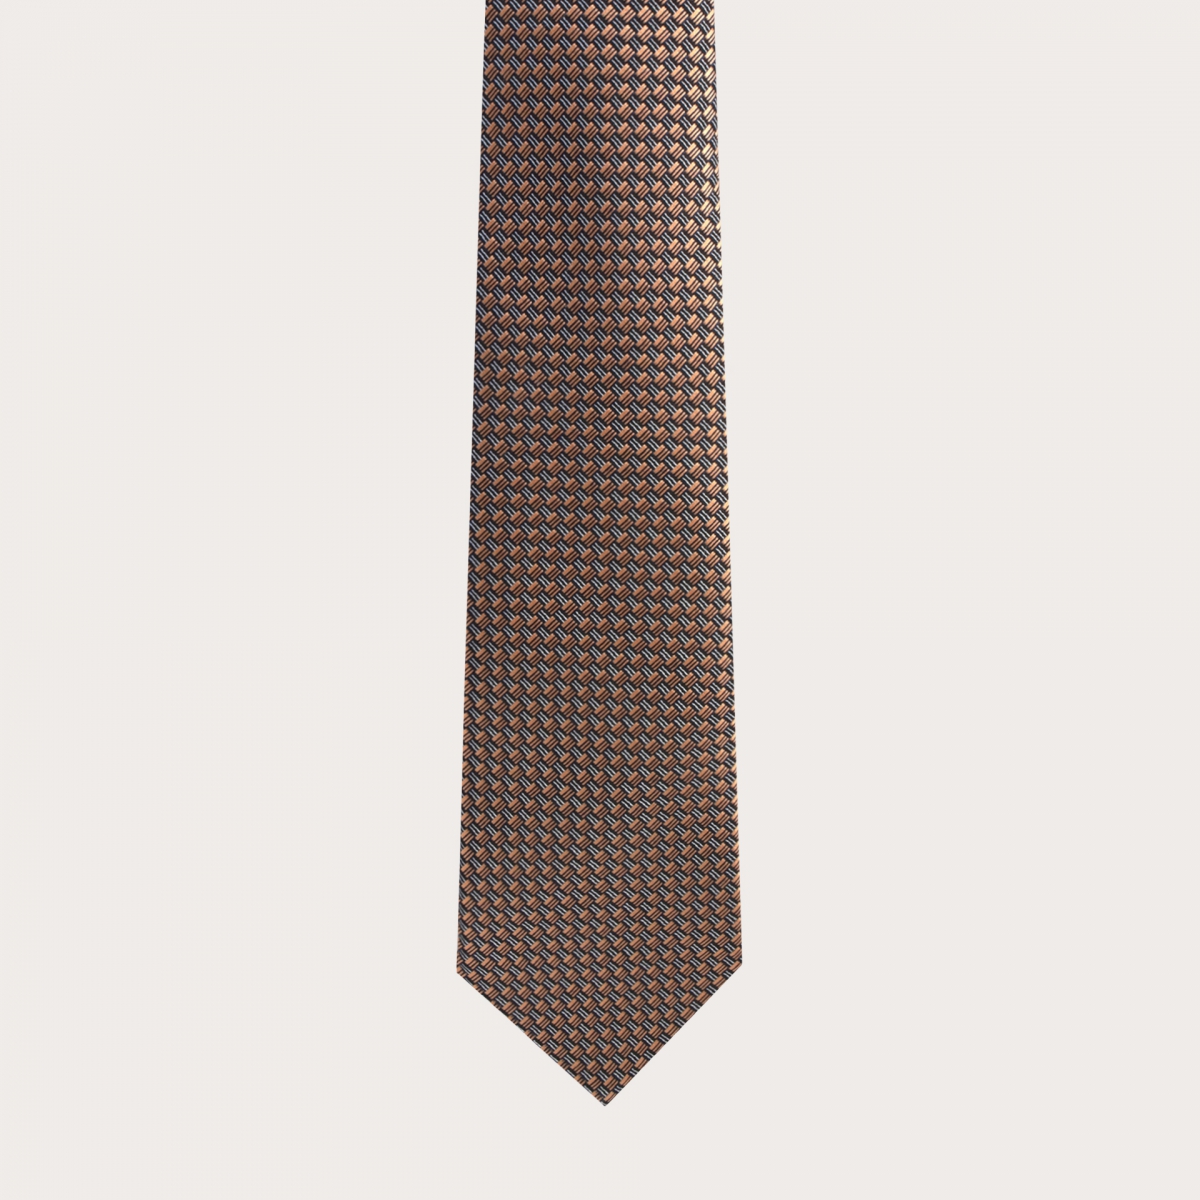 BRUCLE Cravate élégante en soie jacquard, motif bronze